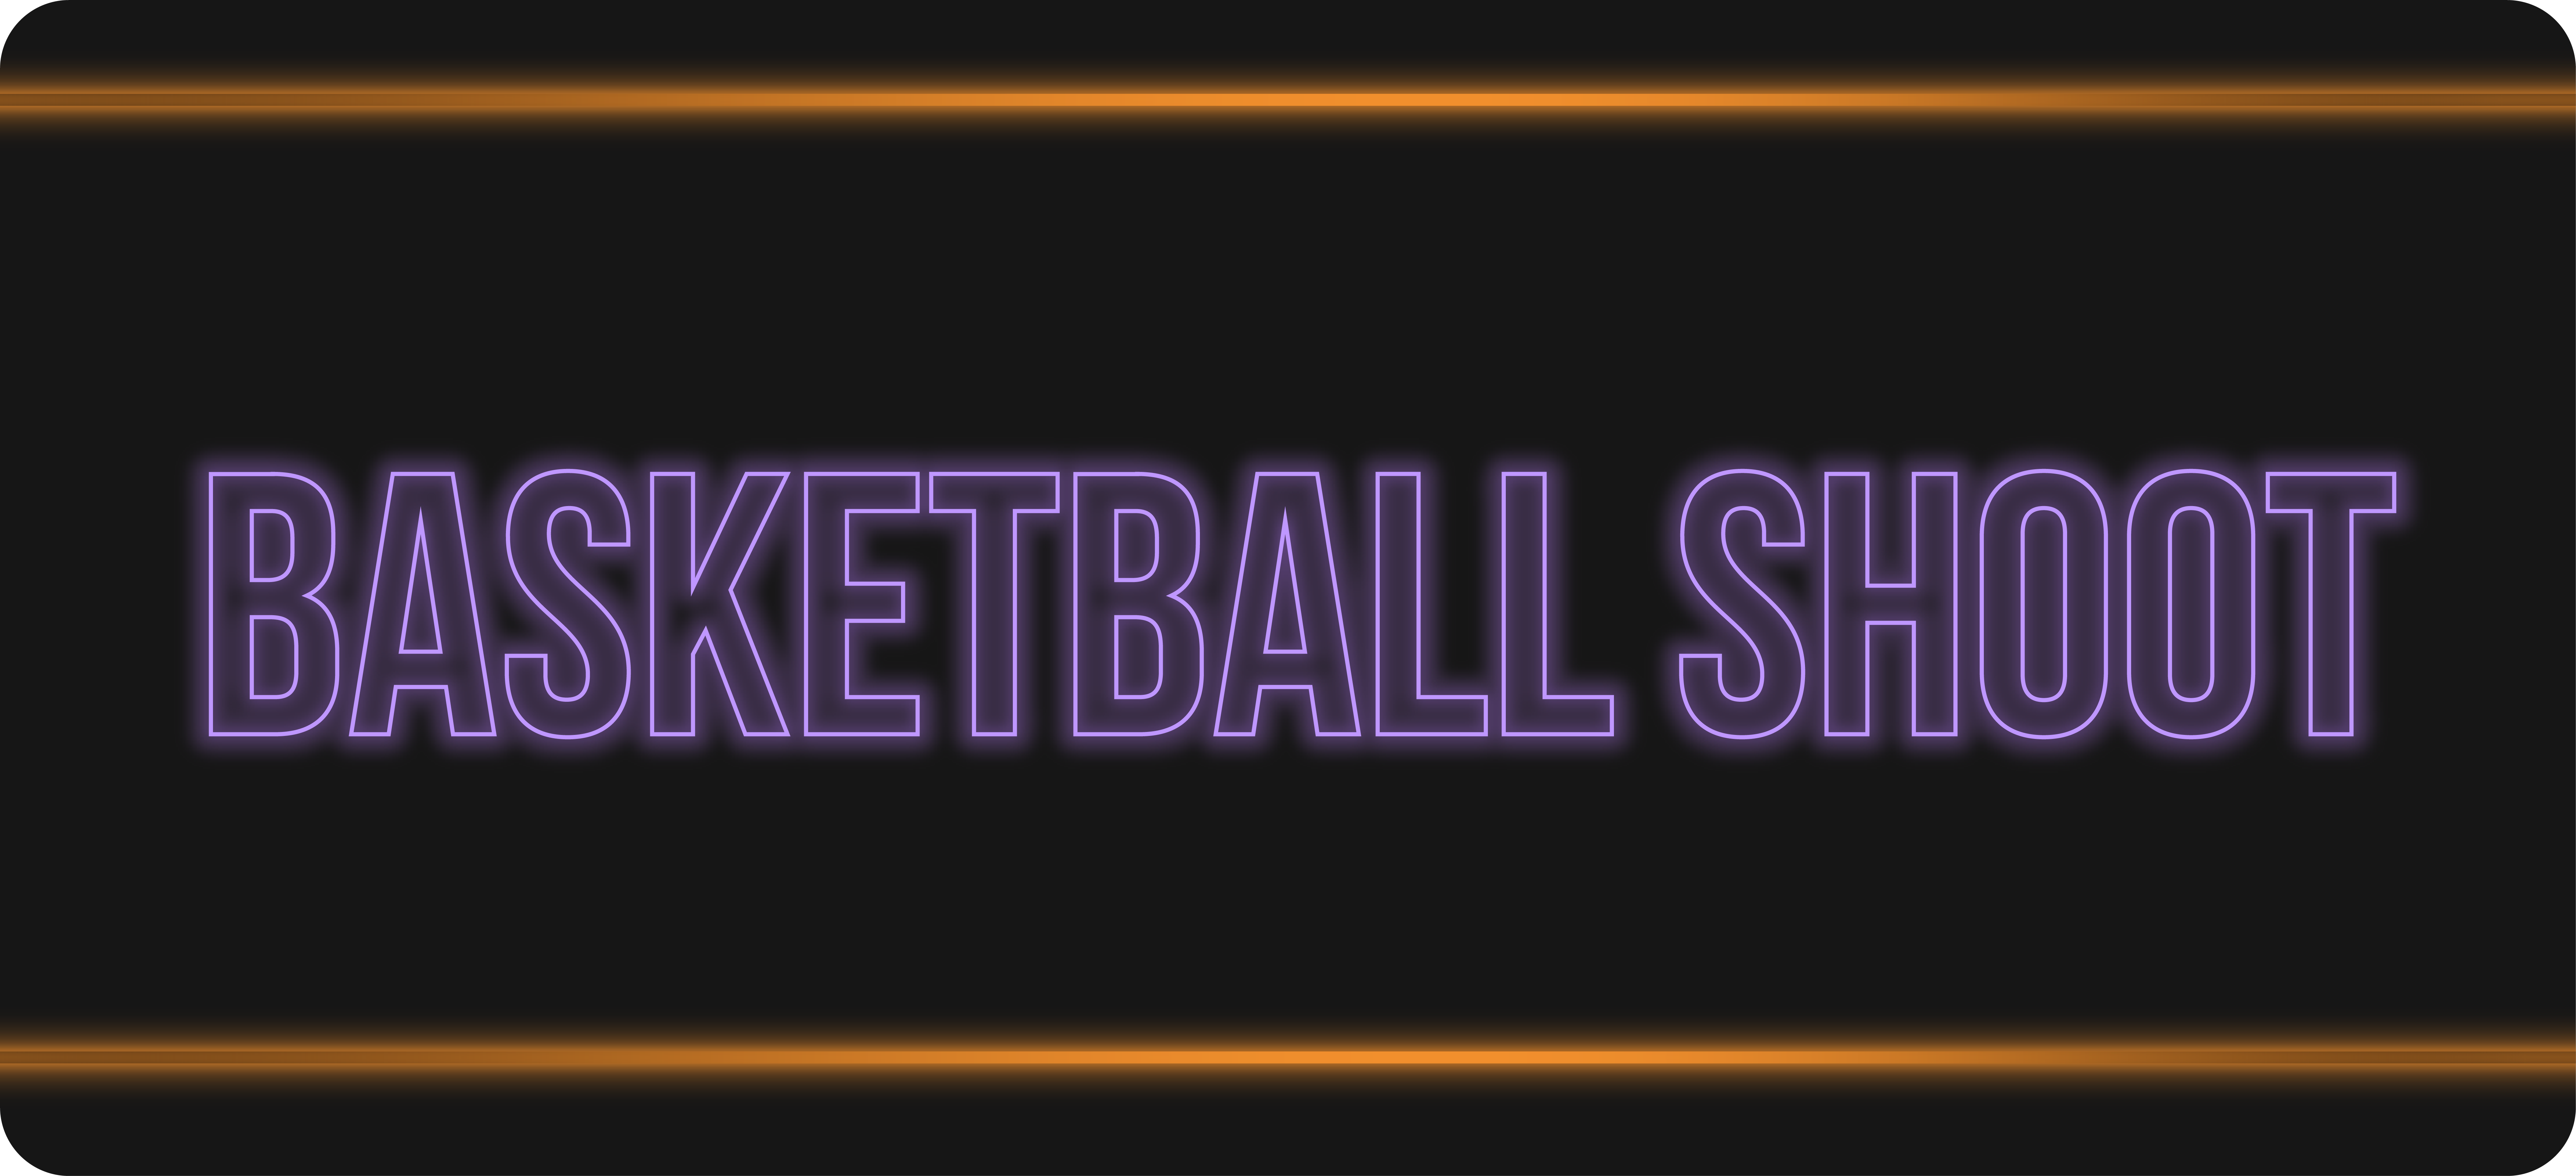 Basketball_shoot_tile